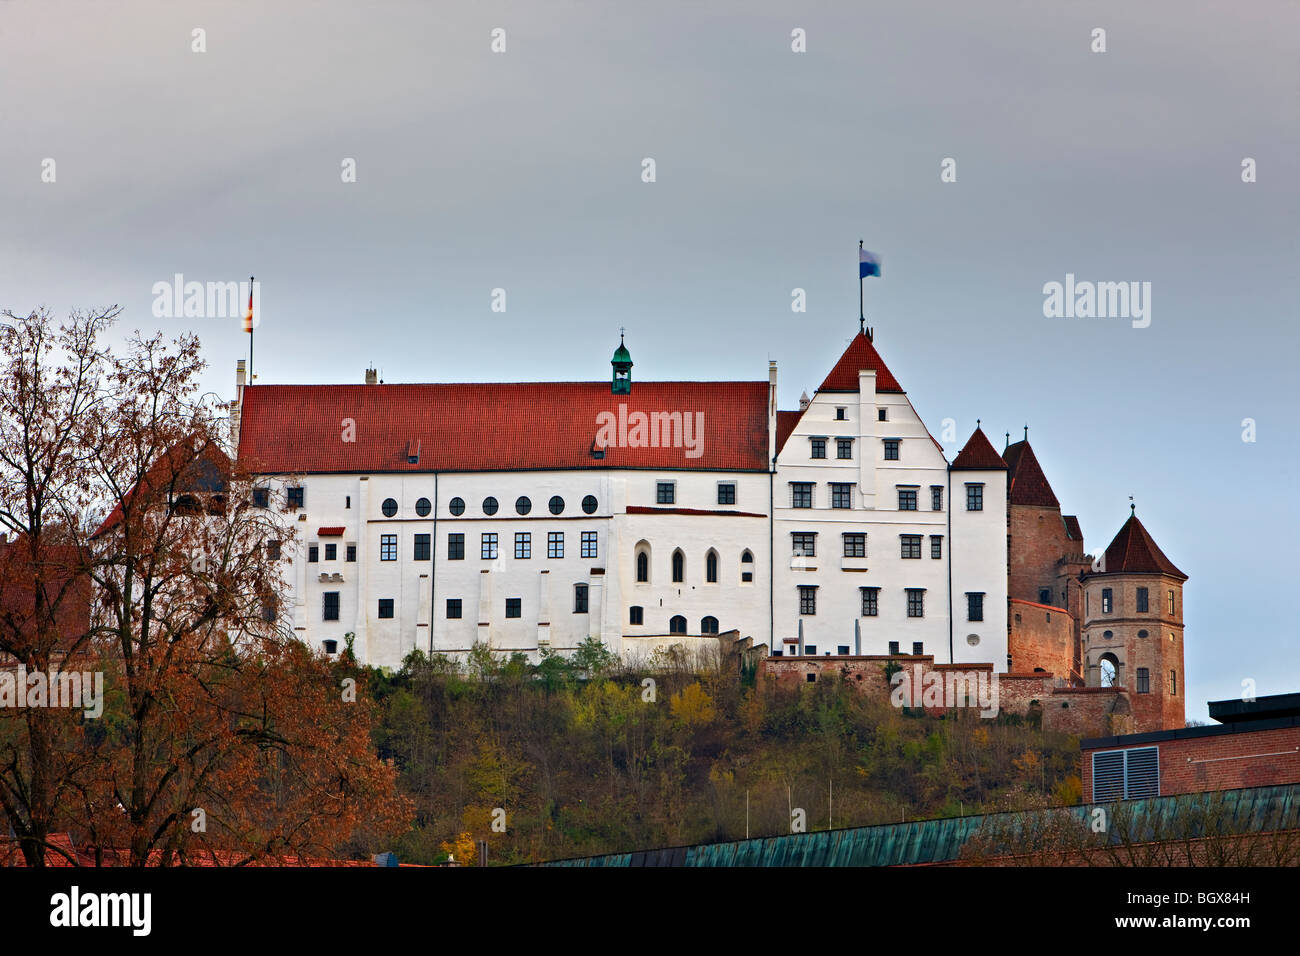 Burg Trausnitz (Trausnitz Castle), City of Landshut, Bavaria, Germany, Europe. Stock Photo